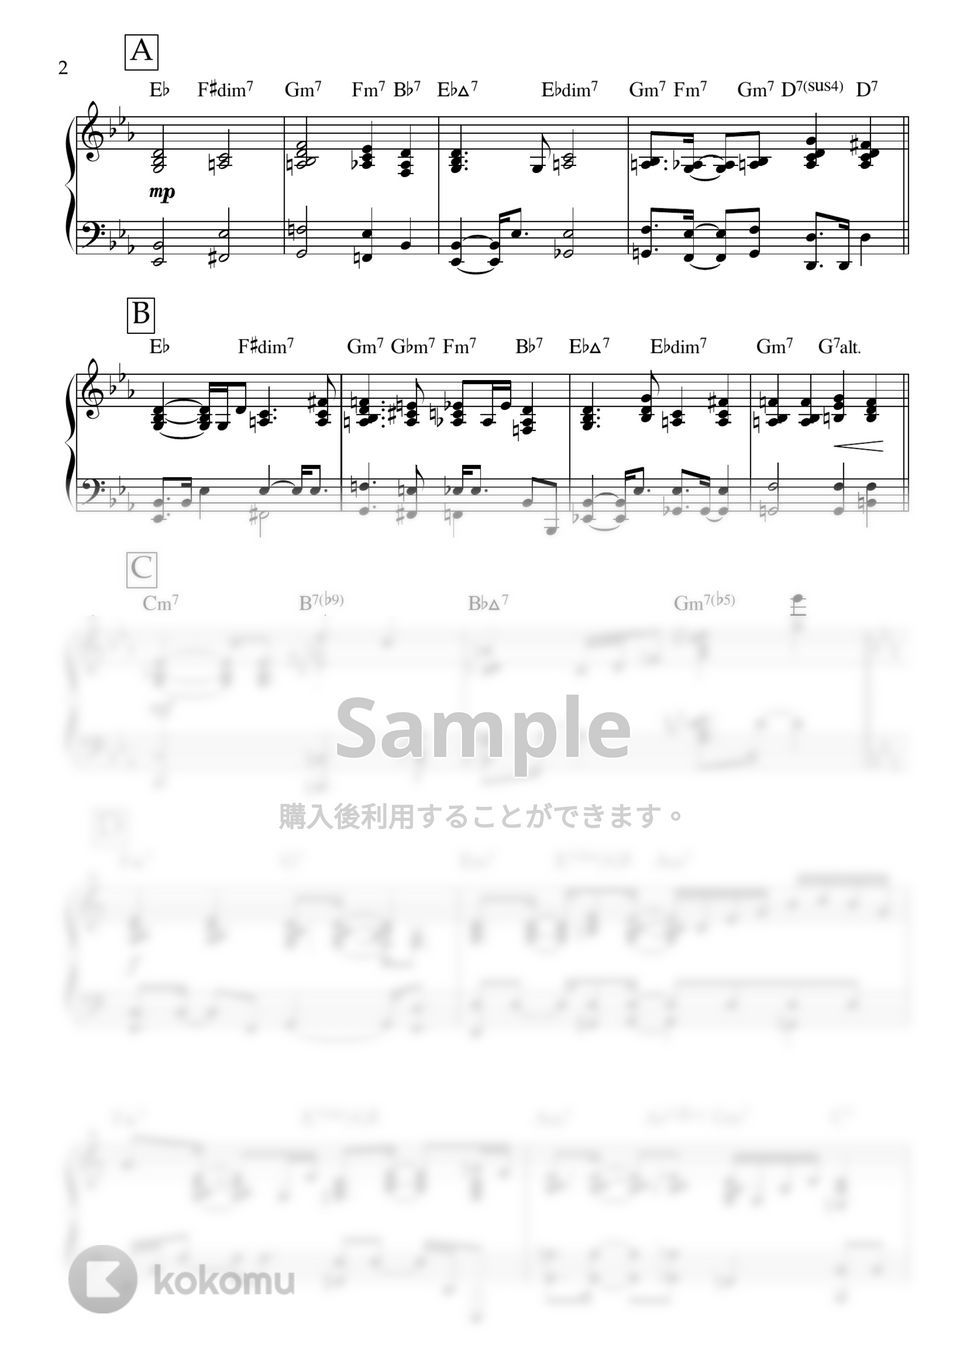 yama - 真っ白 (ピアノ伴奏) by ヒット